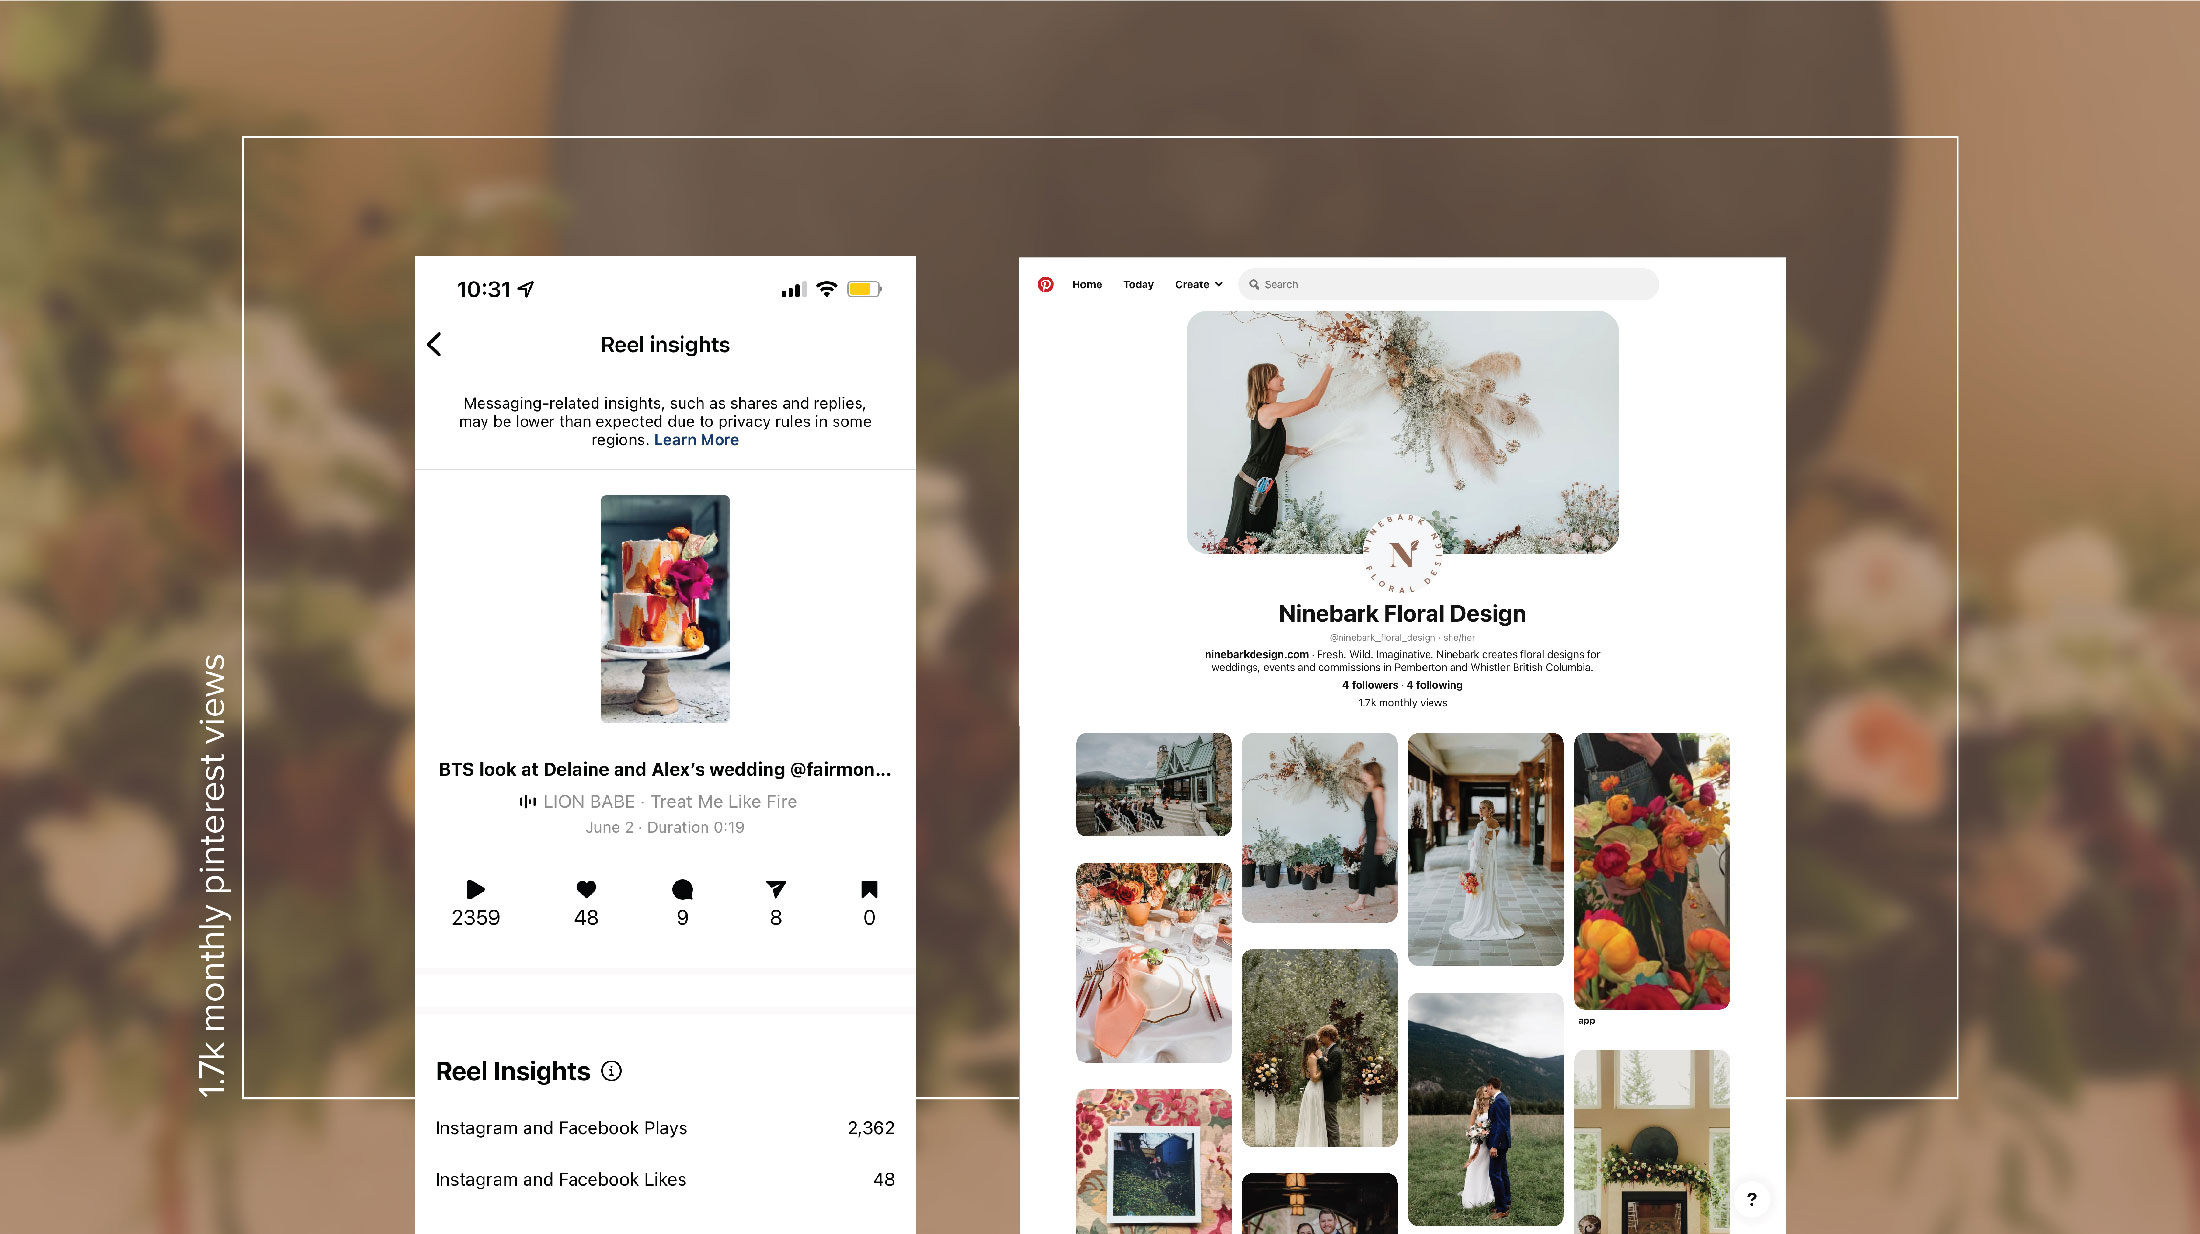 Ninebark Floral Design Pinterest board and Instagram reel insights